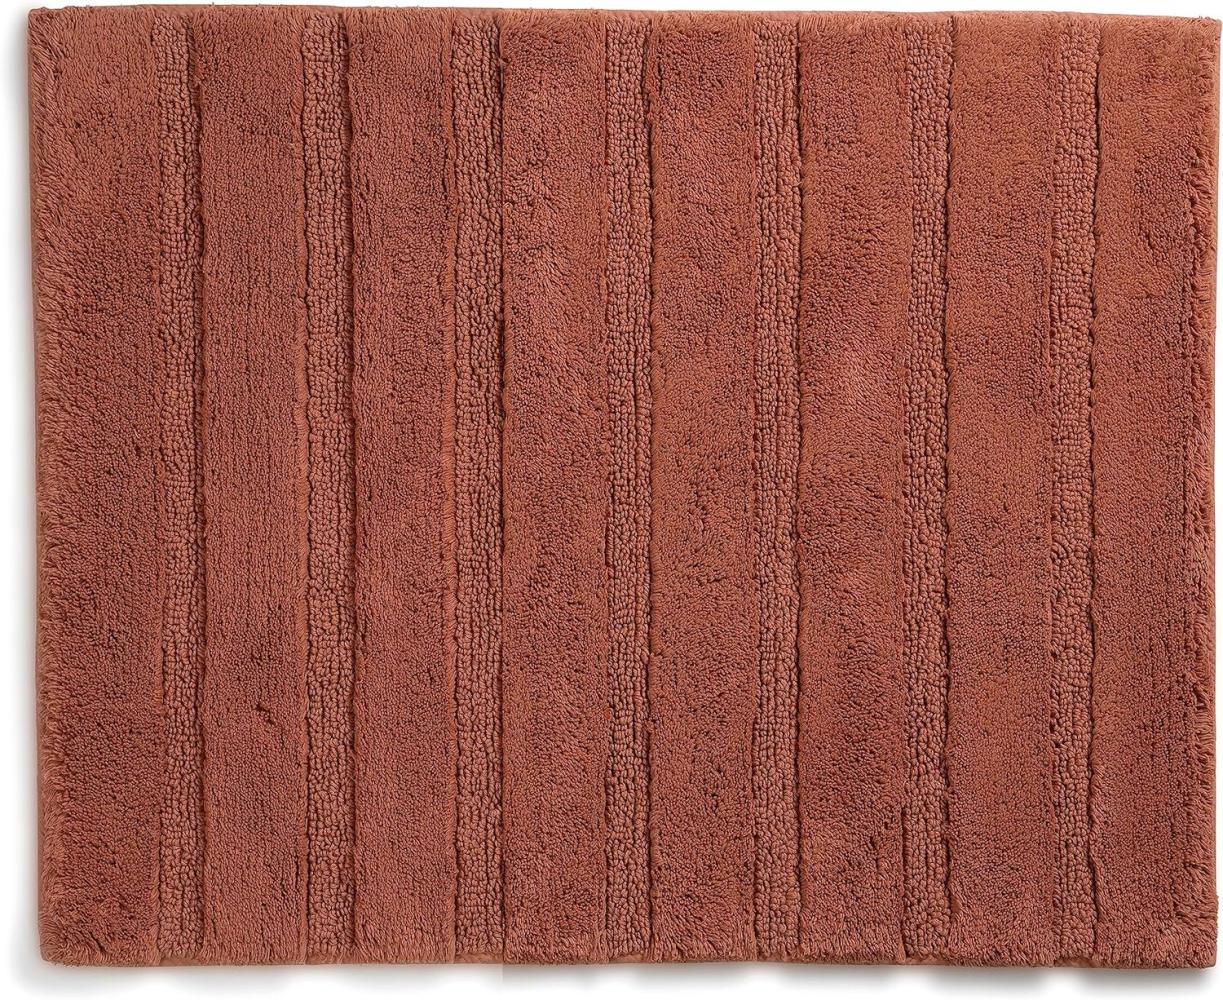 Kela Badematte Megan, 65 cm x 55 cm, 100% Baumwolle, Terra, rutschhemmend, waschbar bis 30° C, geeignet für Fußbodenheizung, 23588 Bild 1